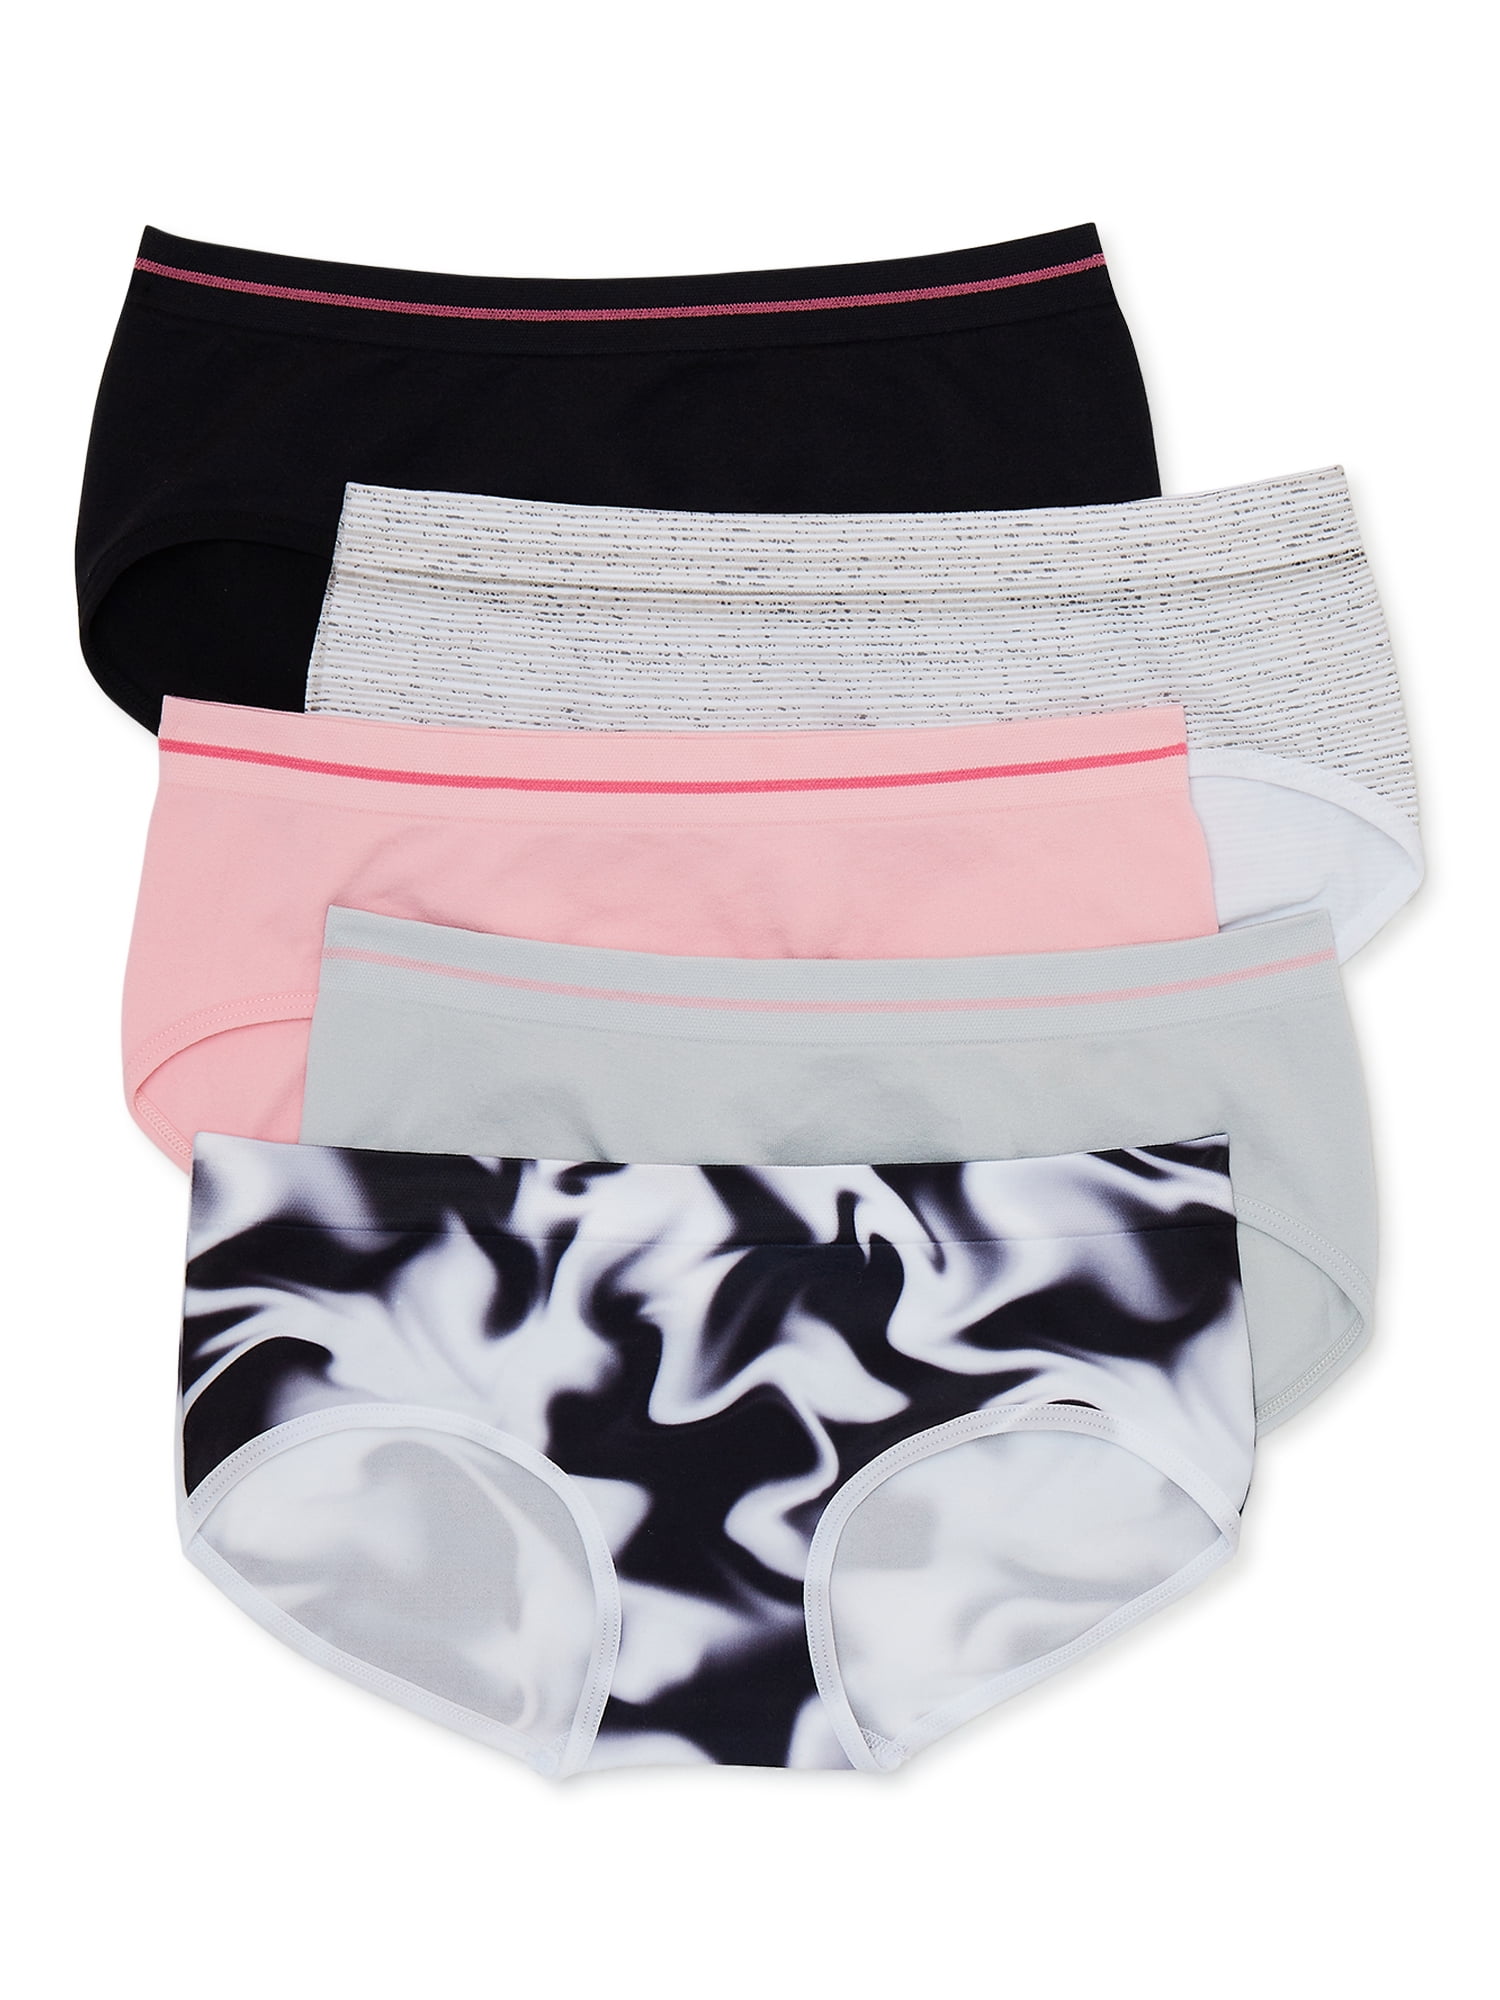 Athletic Works Girls Seamless Brief Underwear, 5-Pack, Sizes S-XL ...